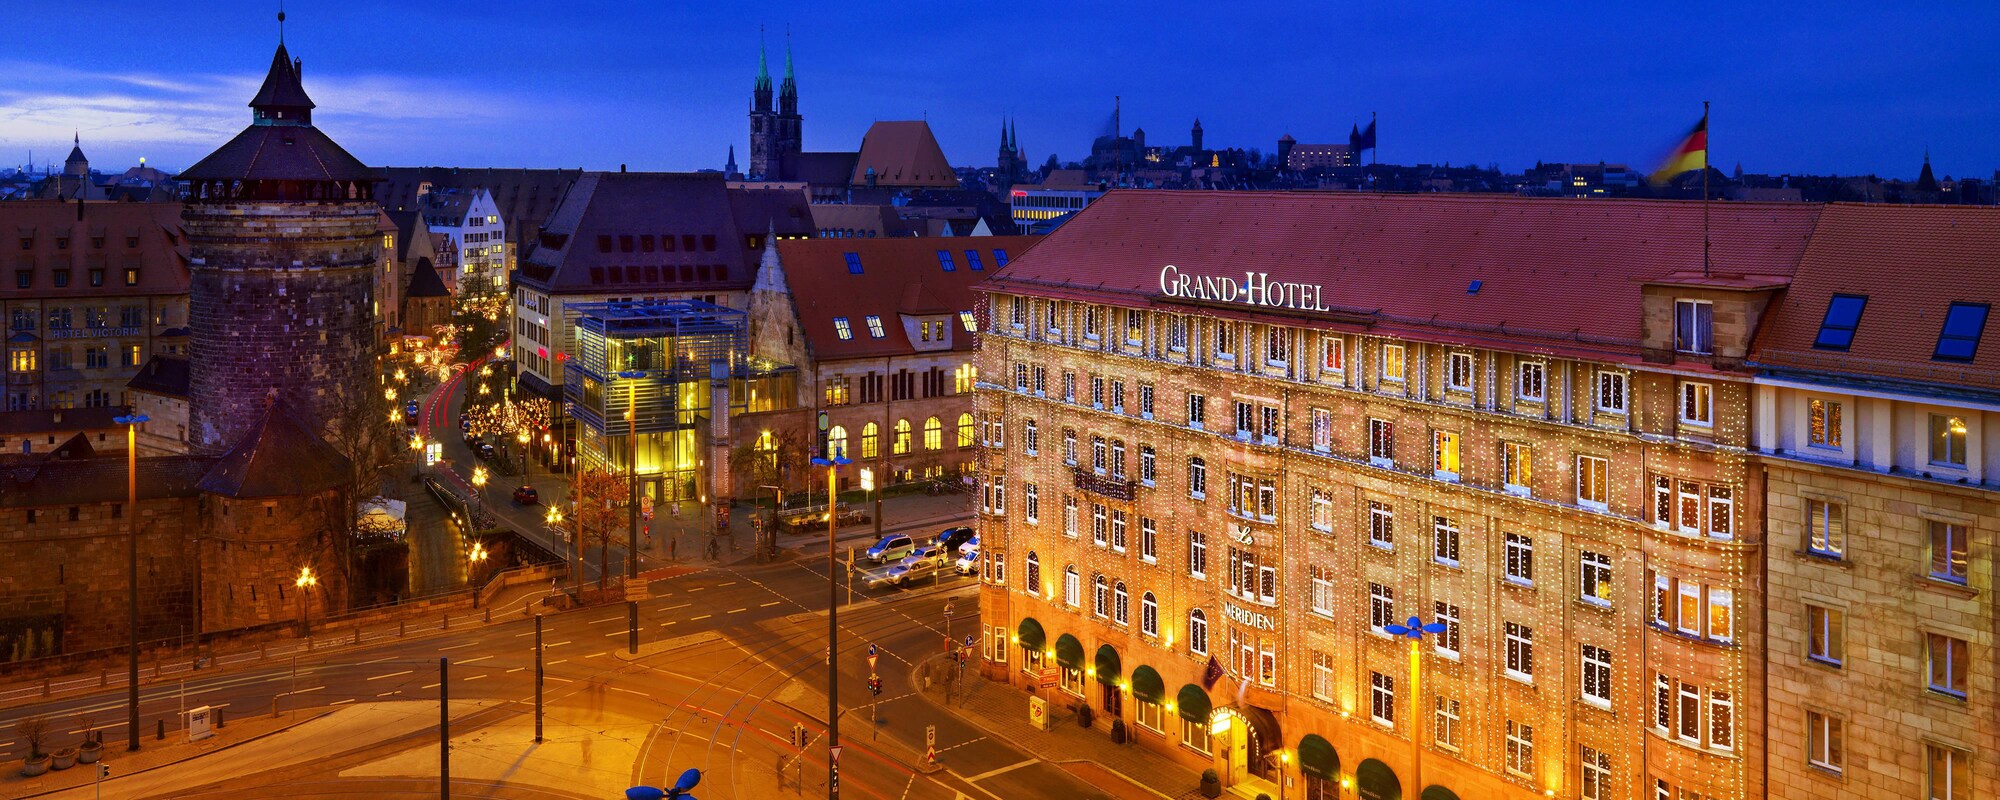 Hotels In Nuremberg Germany Le Meridien Grand Hotel Nuremberg